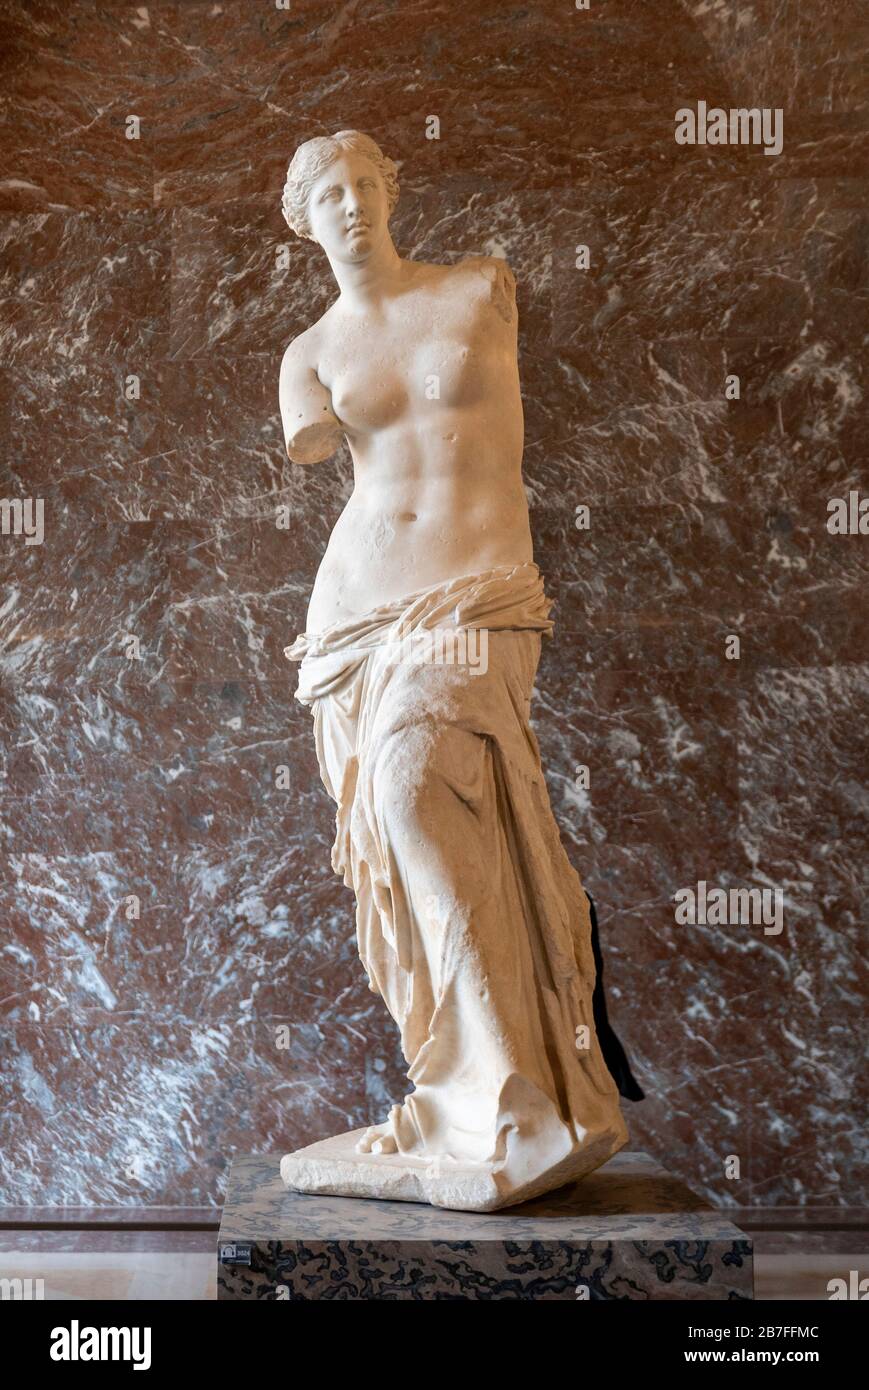 La Vénus de Milo ancienne statue de marbre grec de l'artiste Alexandros d'Antioch, datant d'environ 130-100 av. J.-C., au Musée du Louvre, Paris, France Banque D'Images